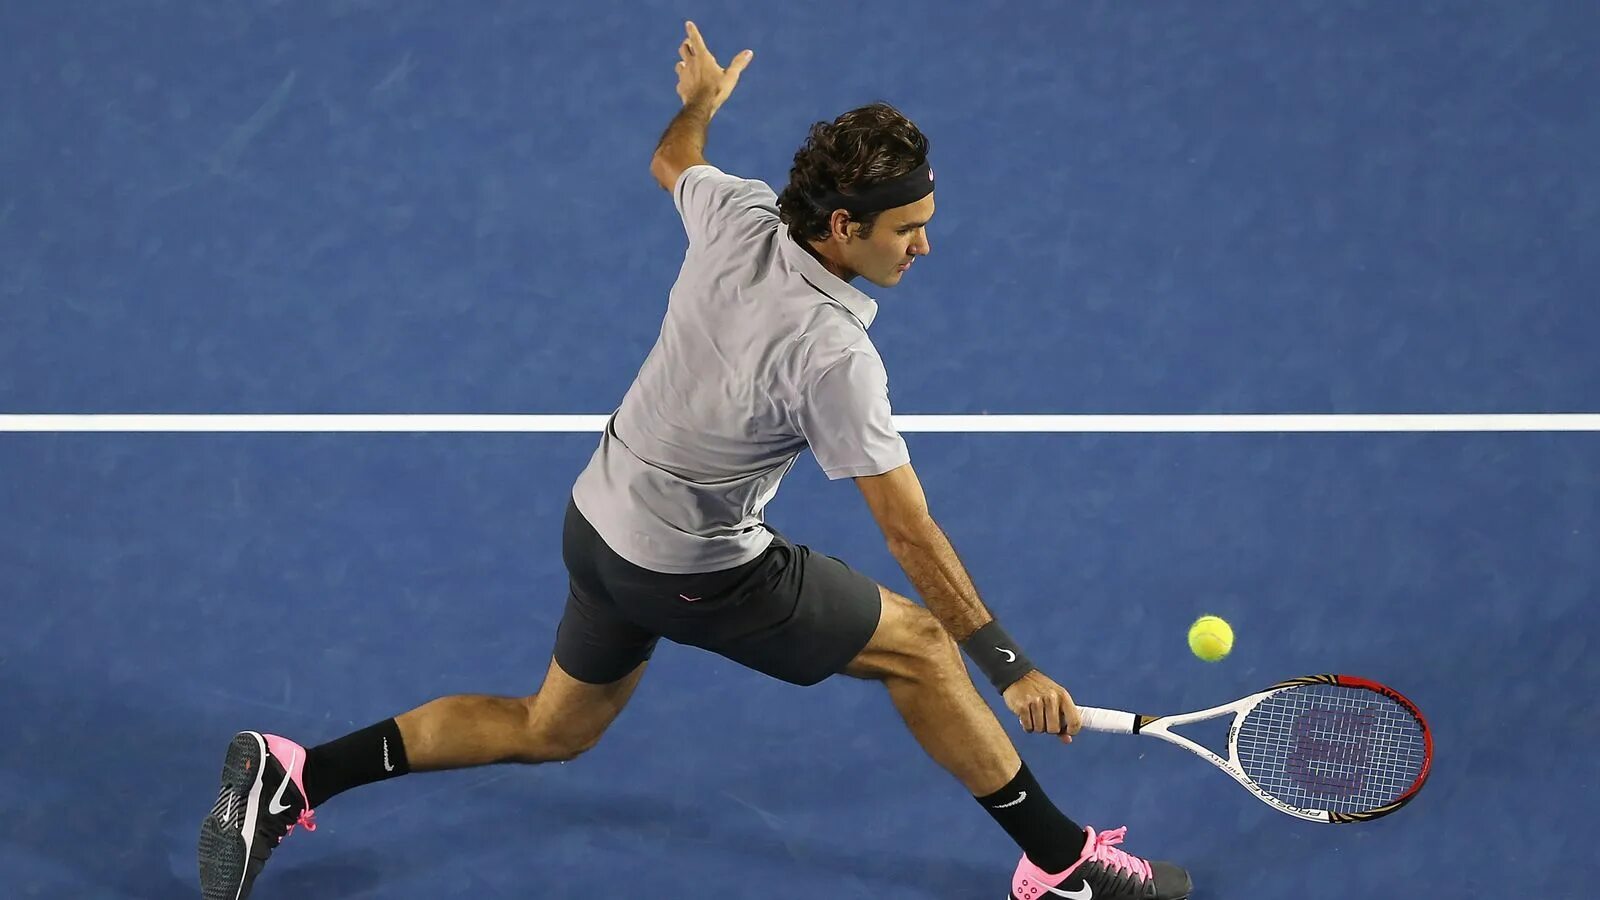 Первый удар в теннисе 6. Бэкхенд Роджер Федерер. Теннис удары Федерер. Теннисист в прыжке. Теннисист со спины.